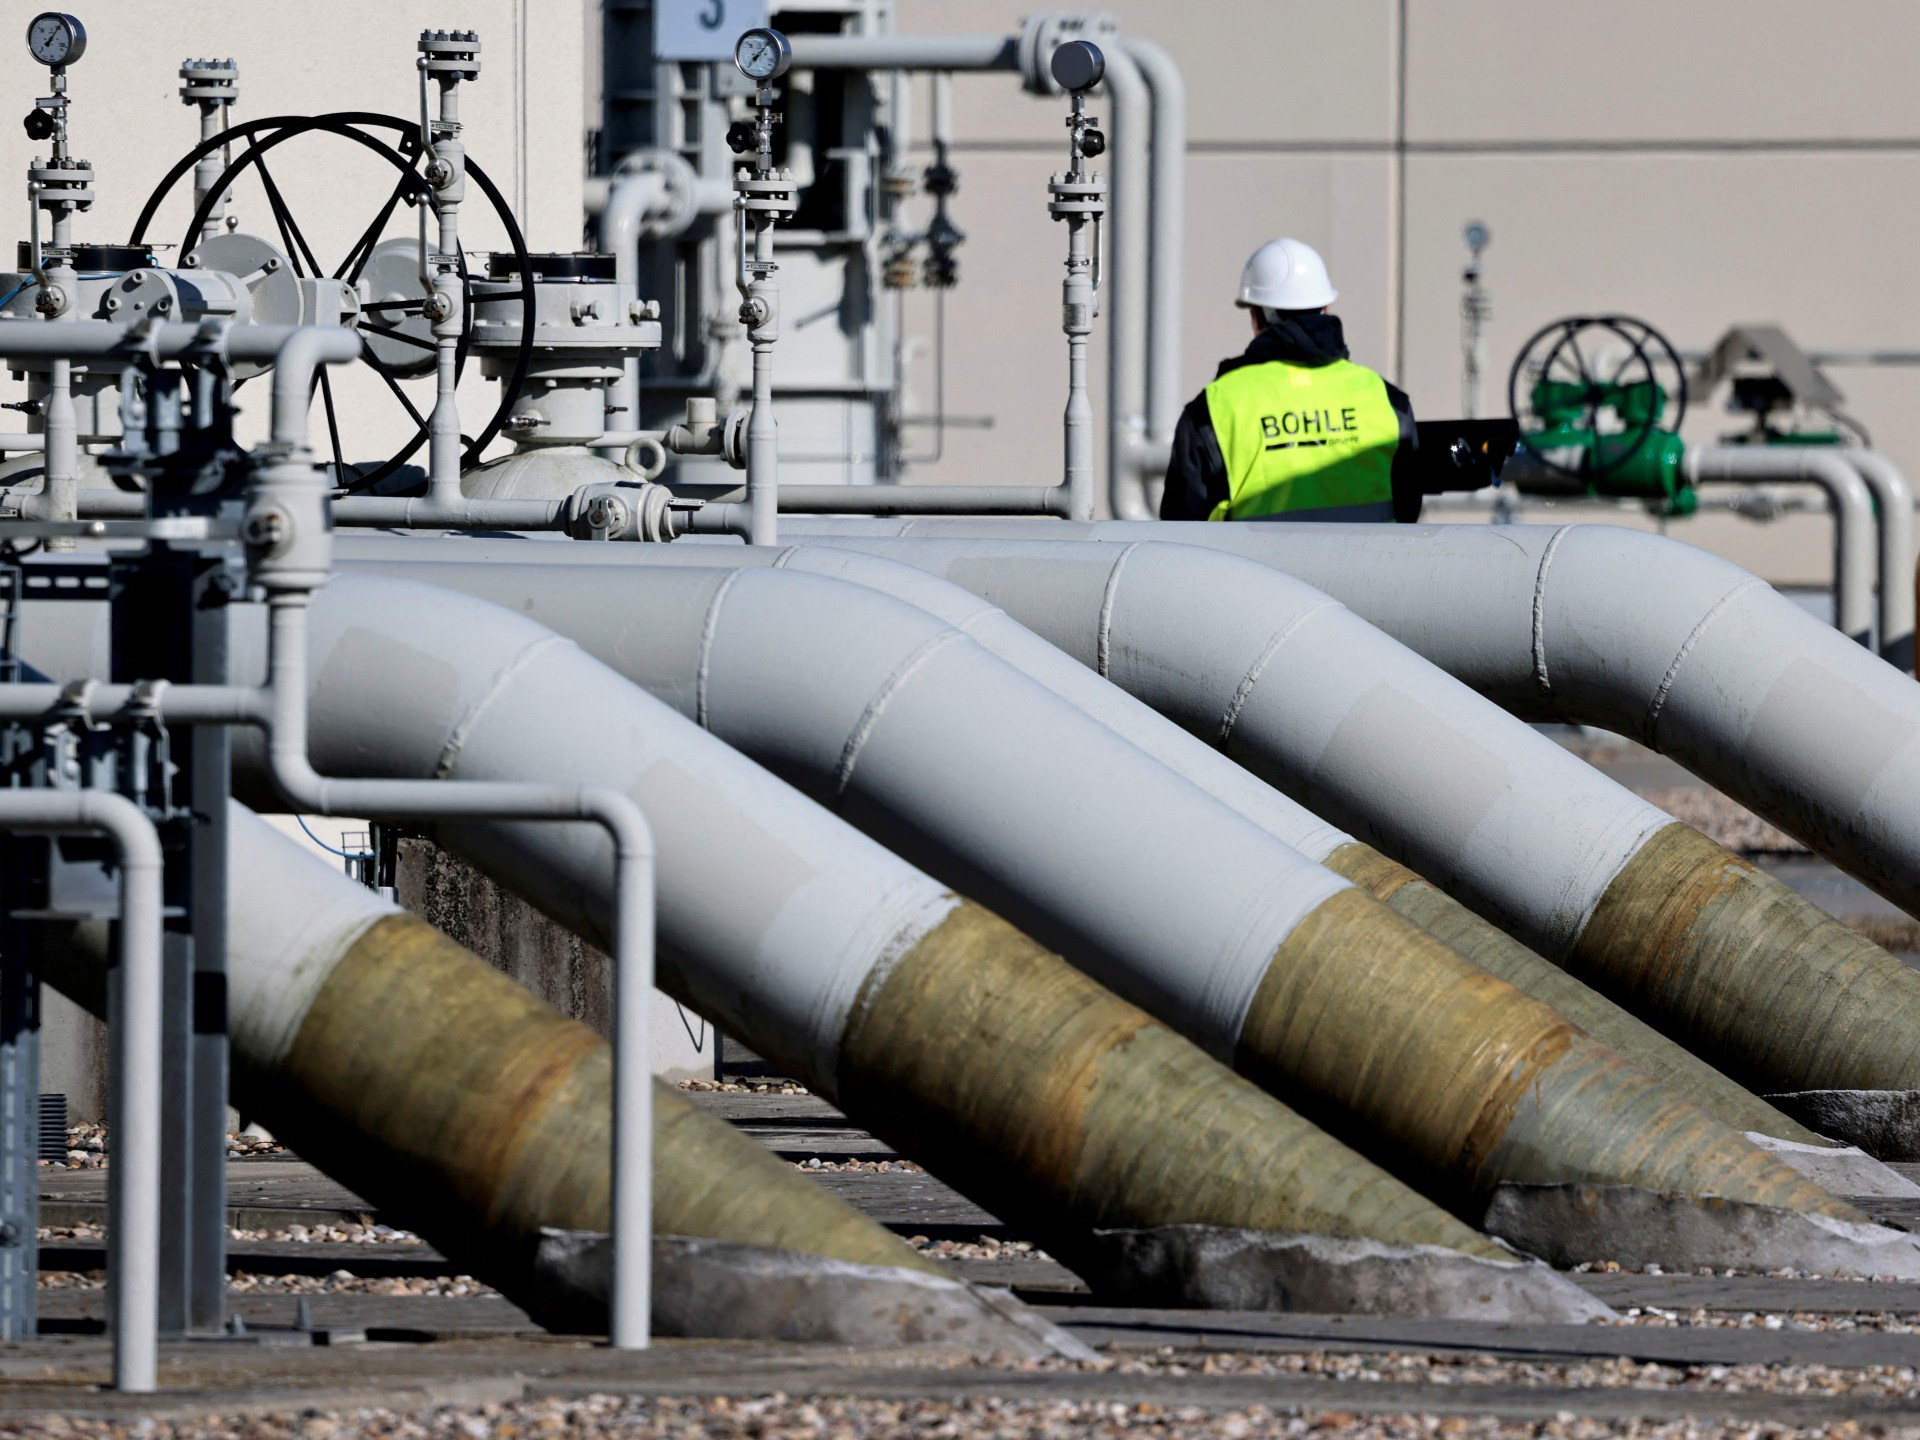 Espanha e Portugal elogiam pedido de Berlim para ligação de gás na Europa |  Notícias de Petróleo e Gás